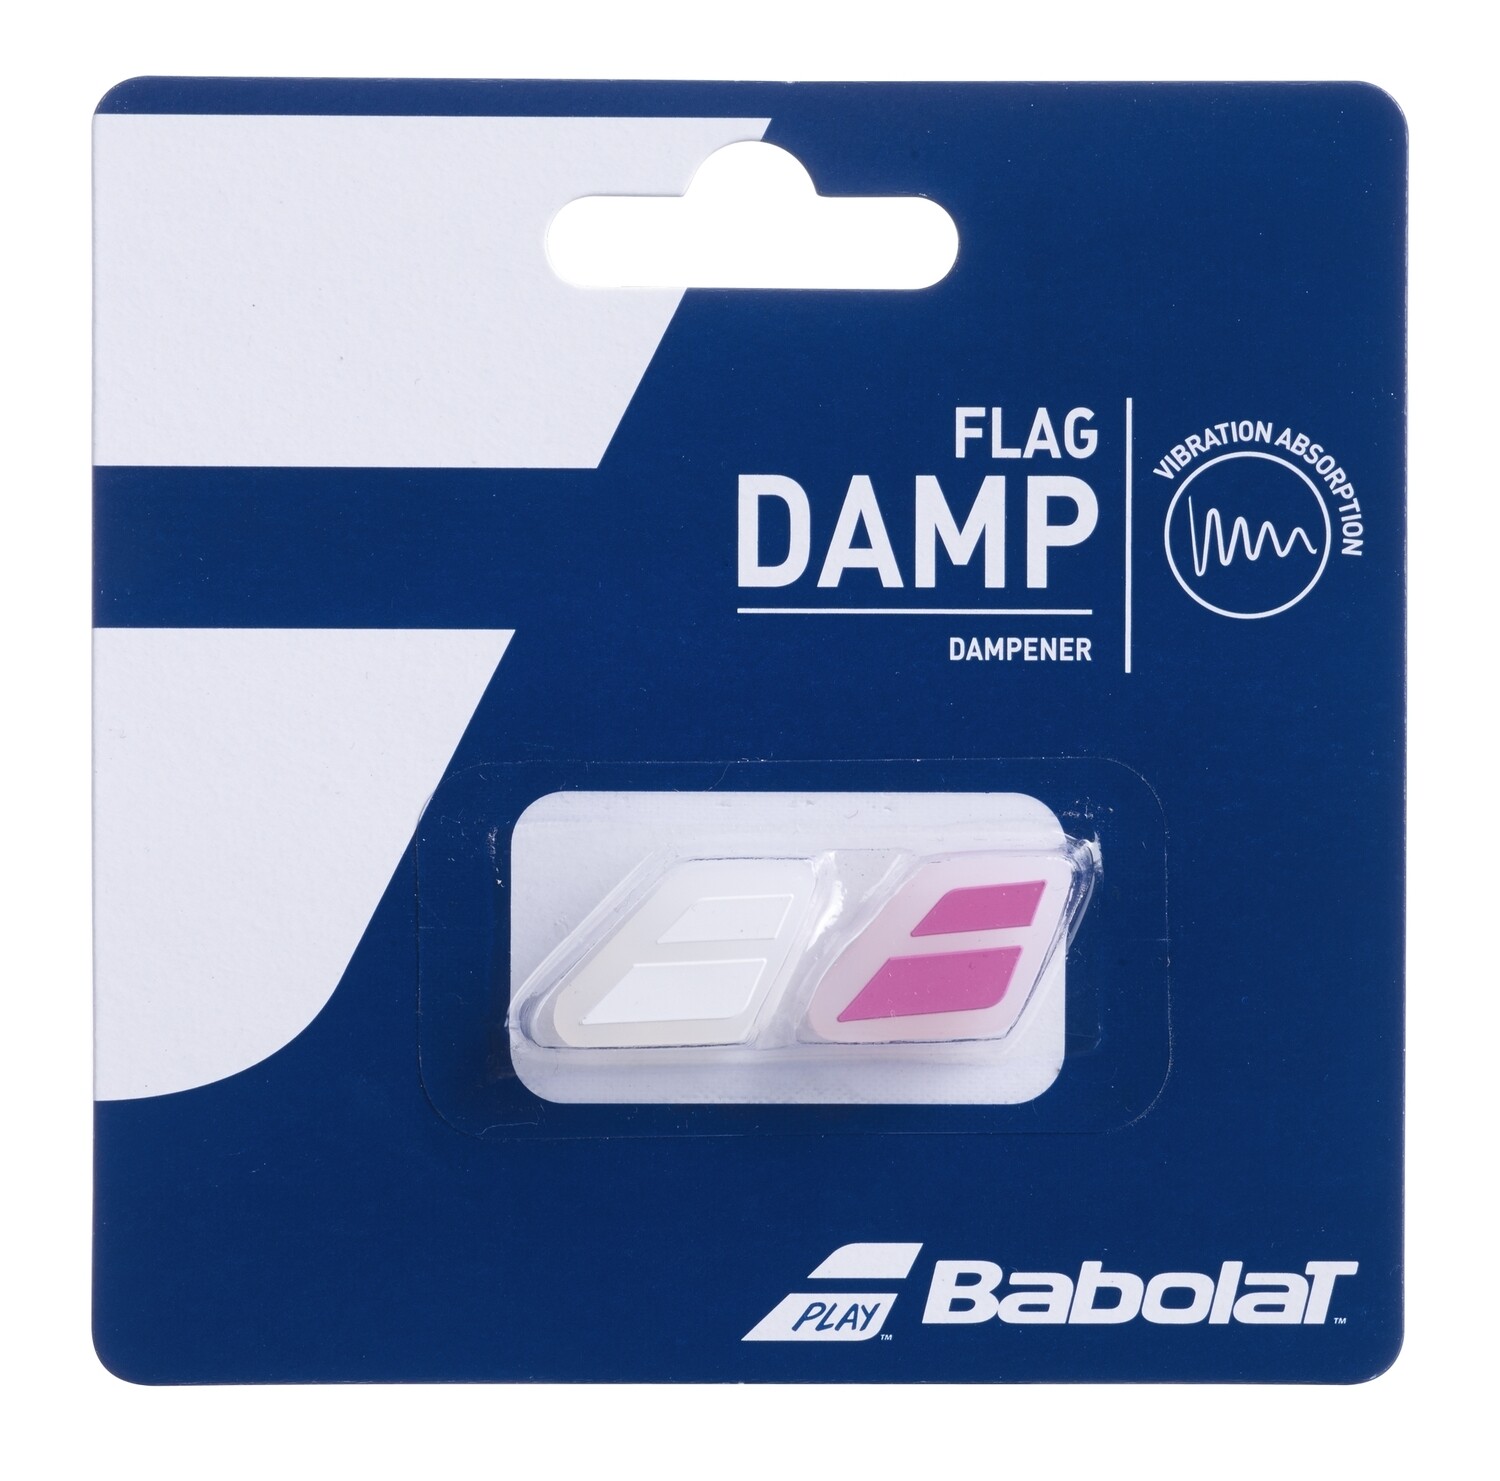 Babolat Flag Damp Dampener - 2 pack